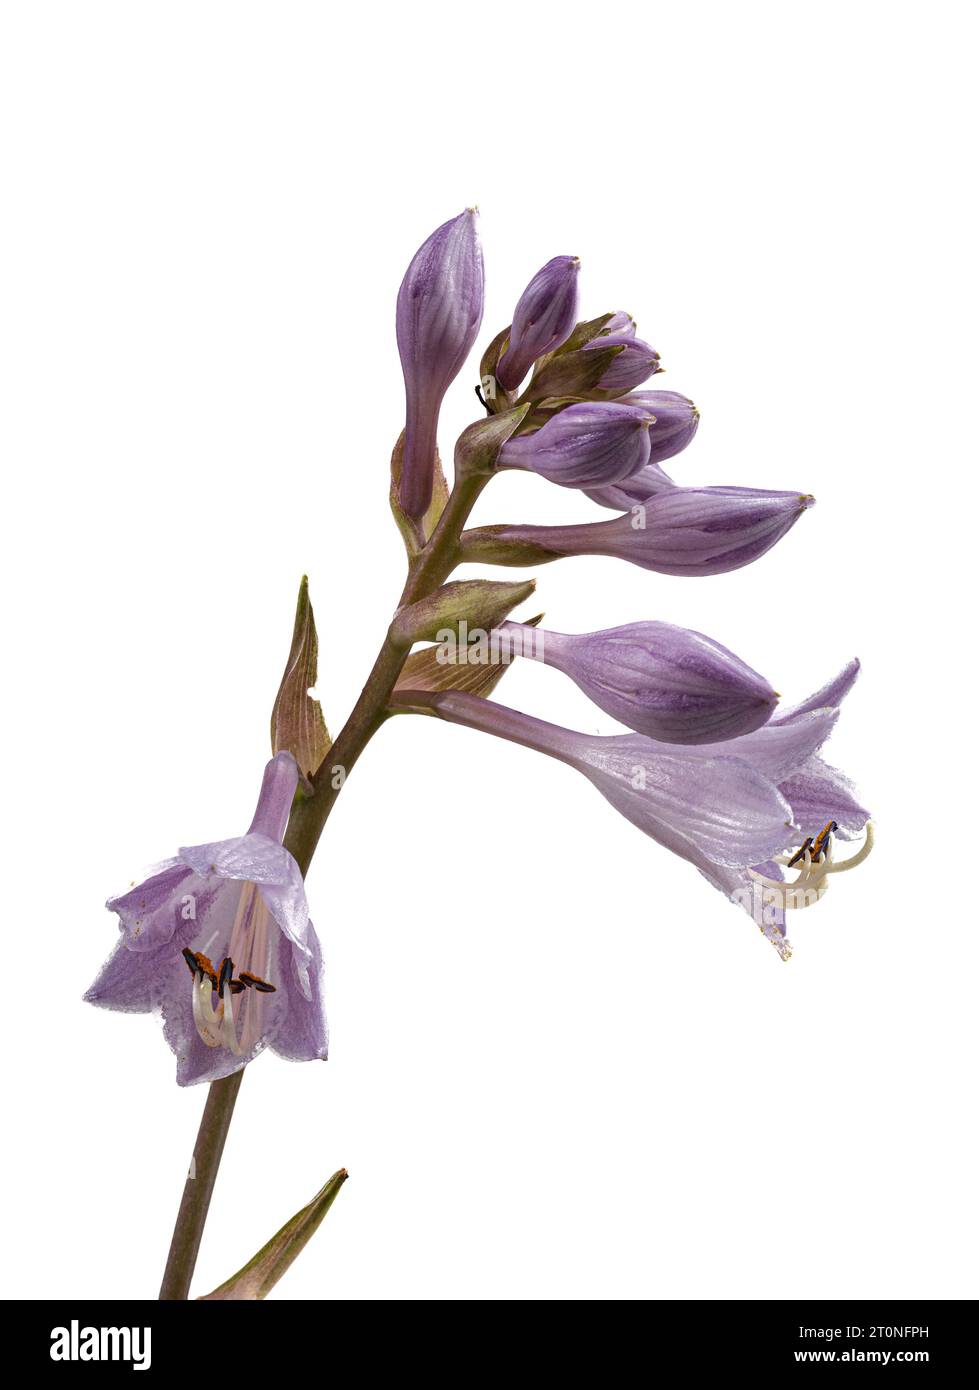 Fiori di giglio lilla della resistente pianta da giardino perenne, Hosta "June" su sfondo bianco Foto Stock